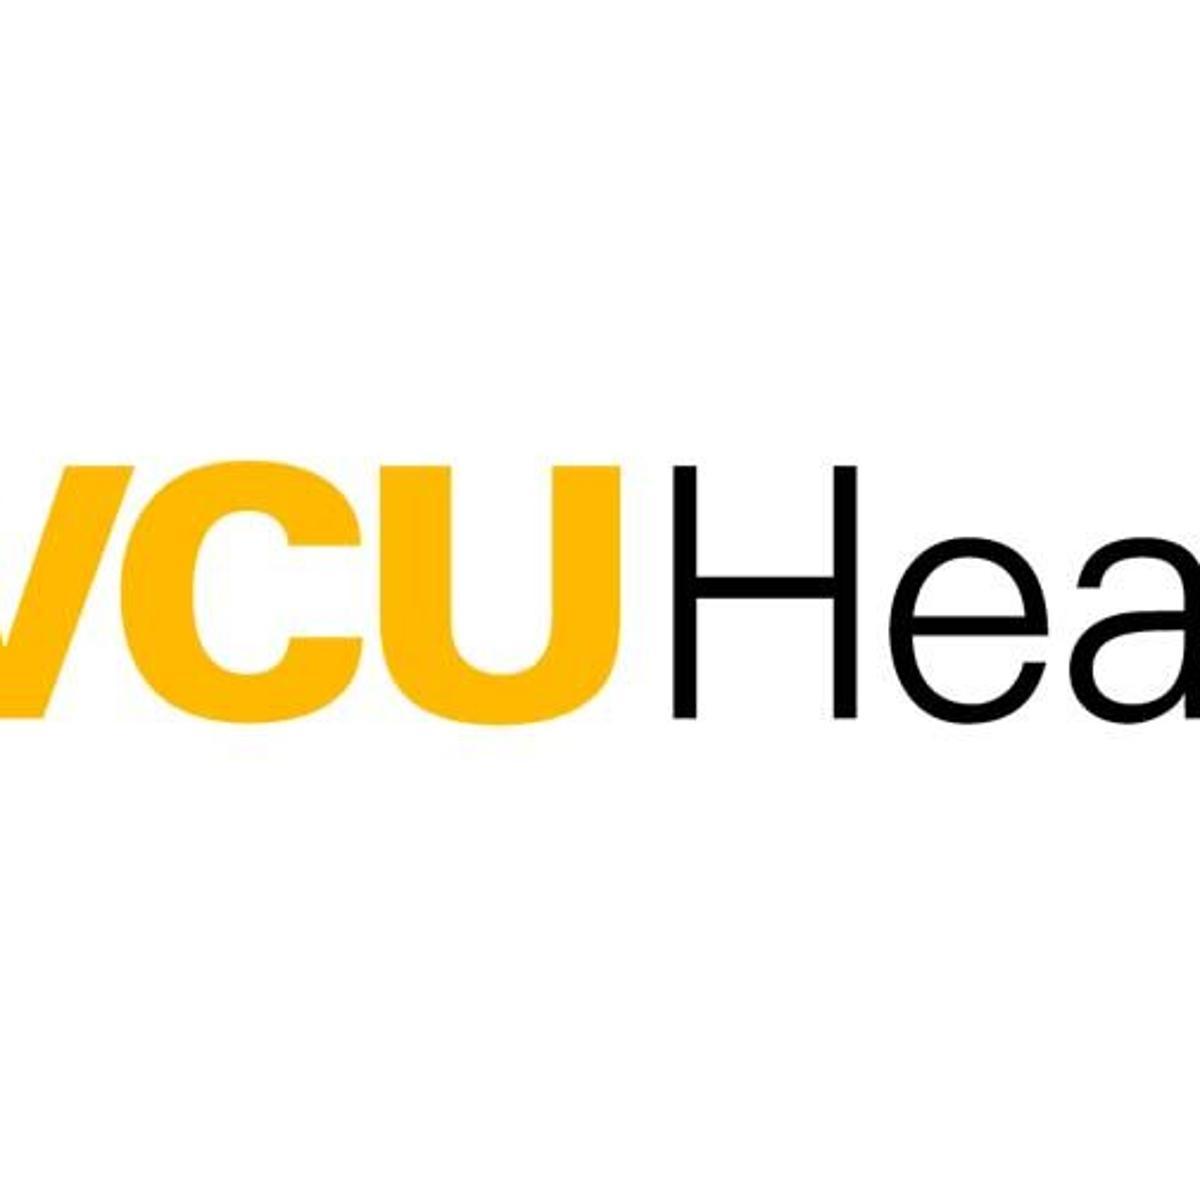 VCU Logo - VCU Health is new brand for VCU Medical Center | Local | richmond.com